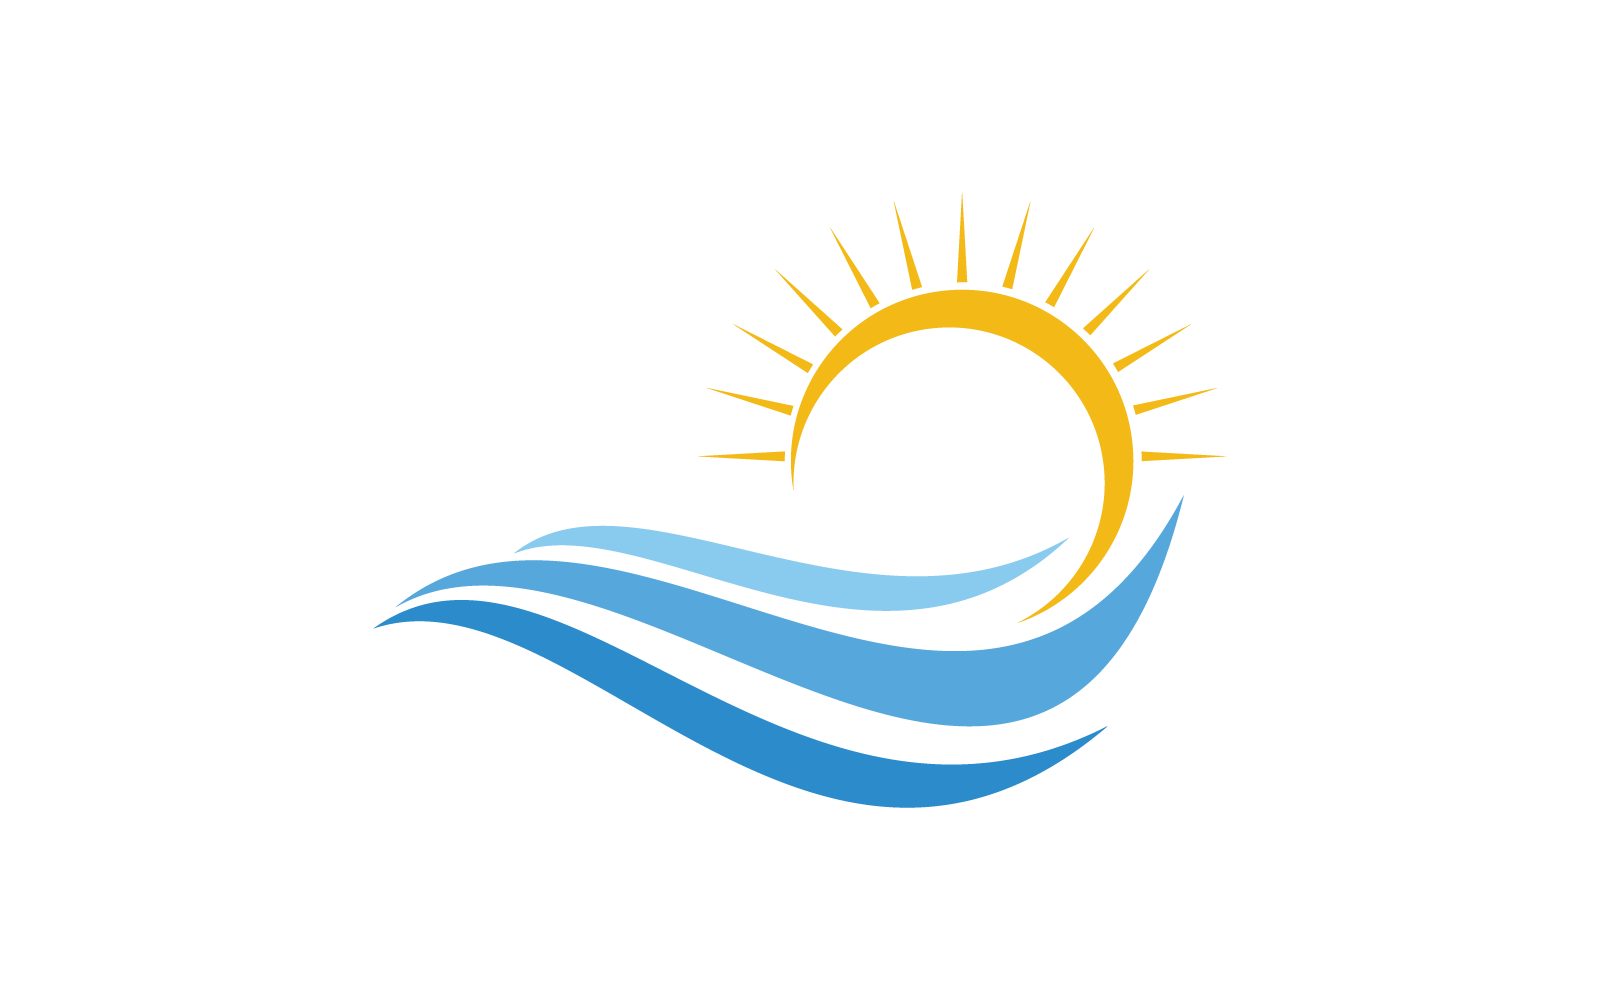 Water Wave design illustration logo vector